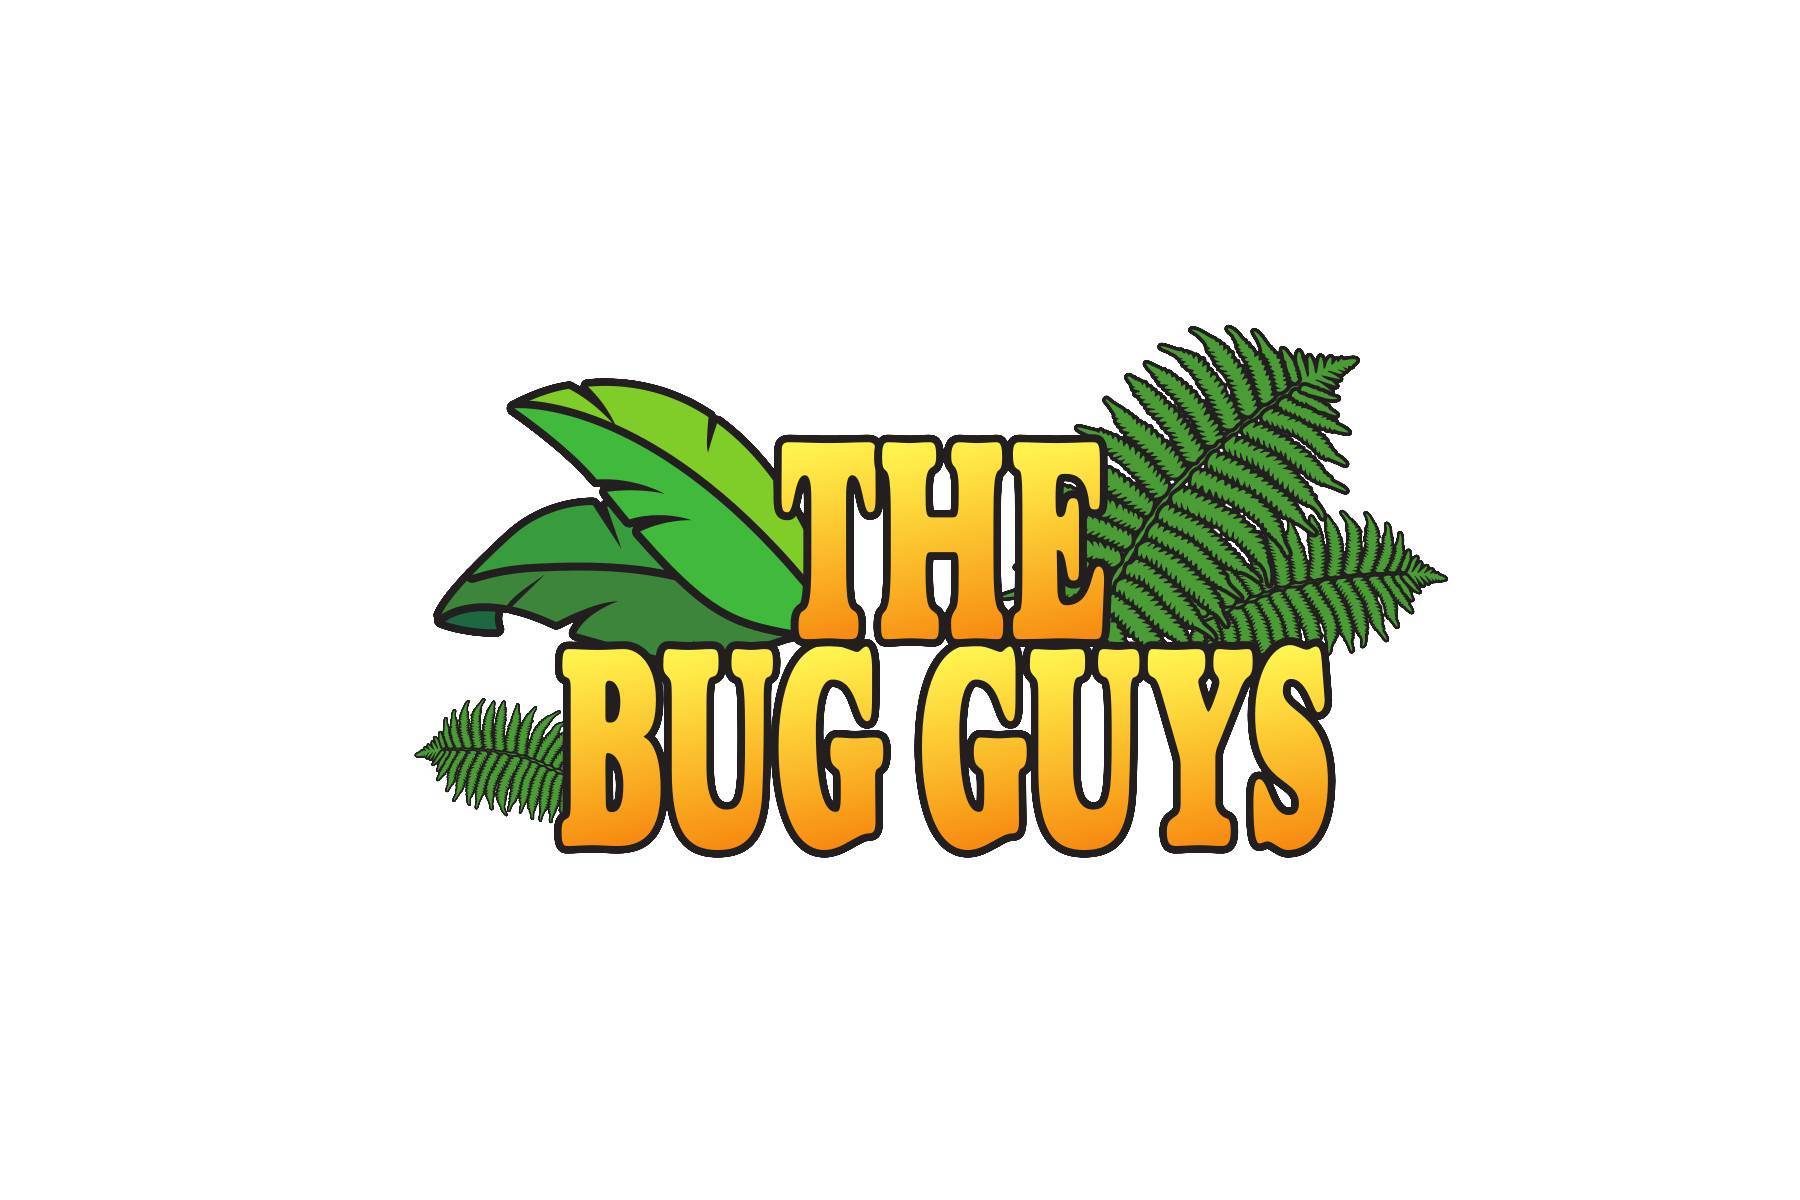 The Bug Guys